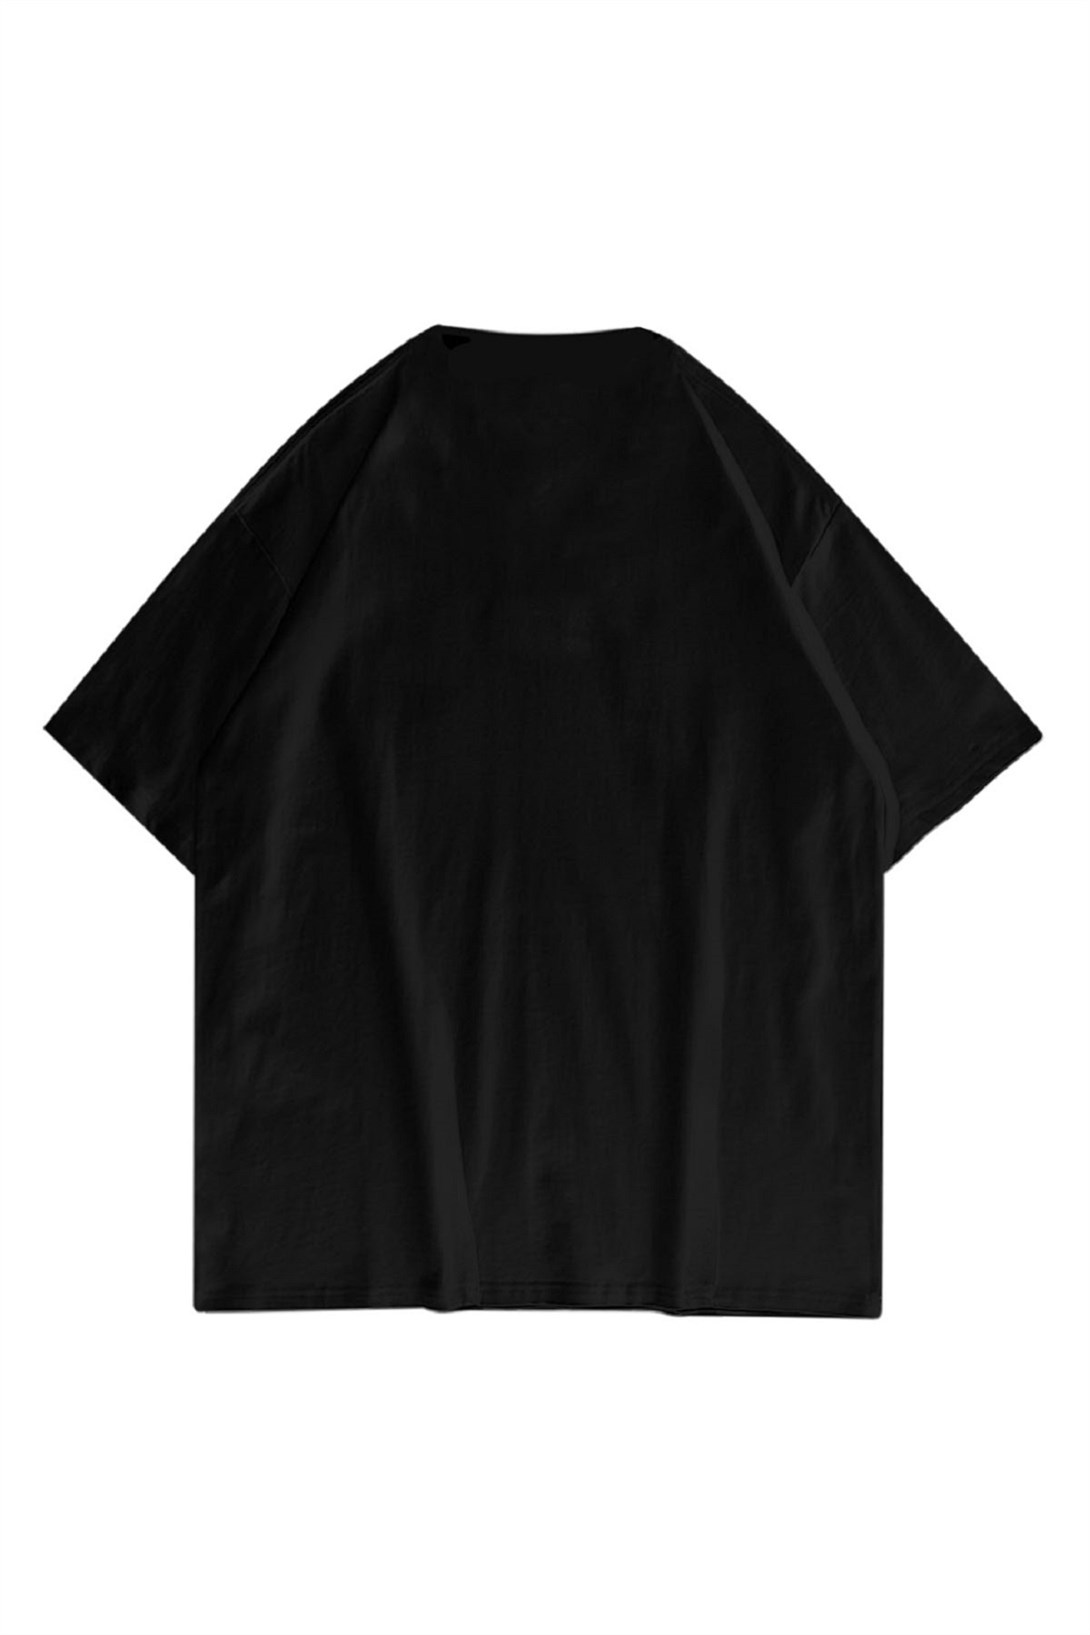 Trendiz Unisex Distraction Siyah Tshirt 